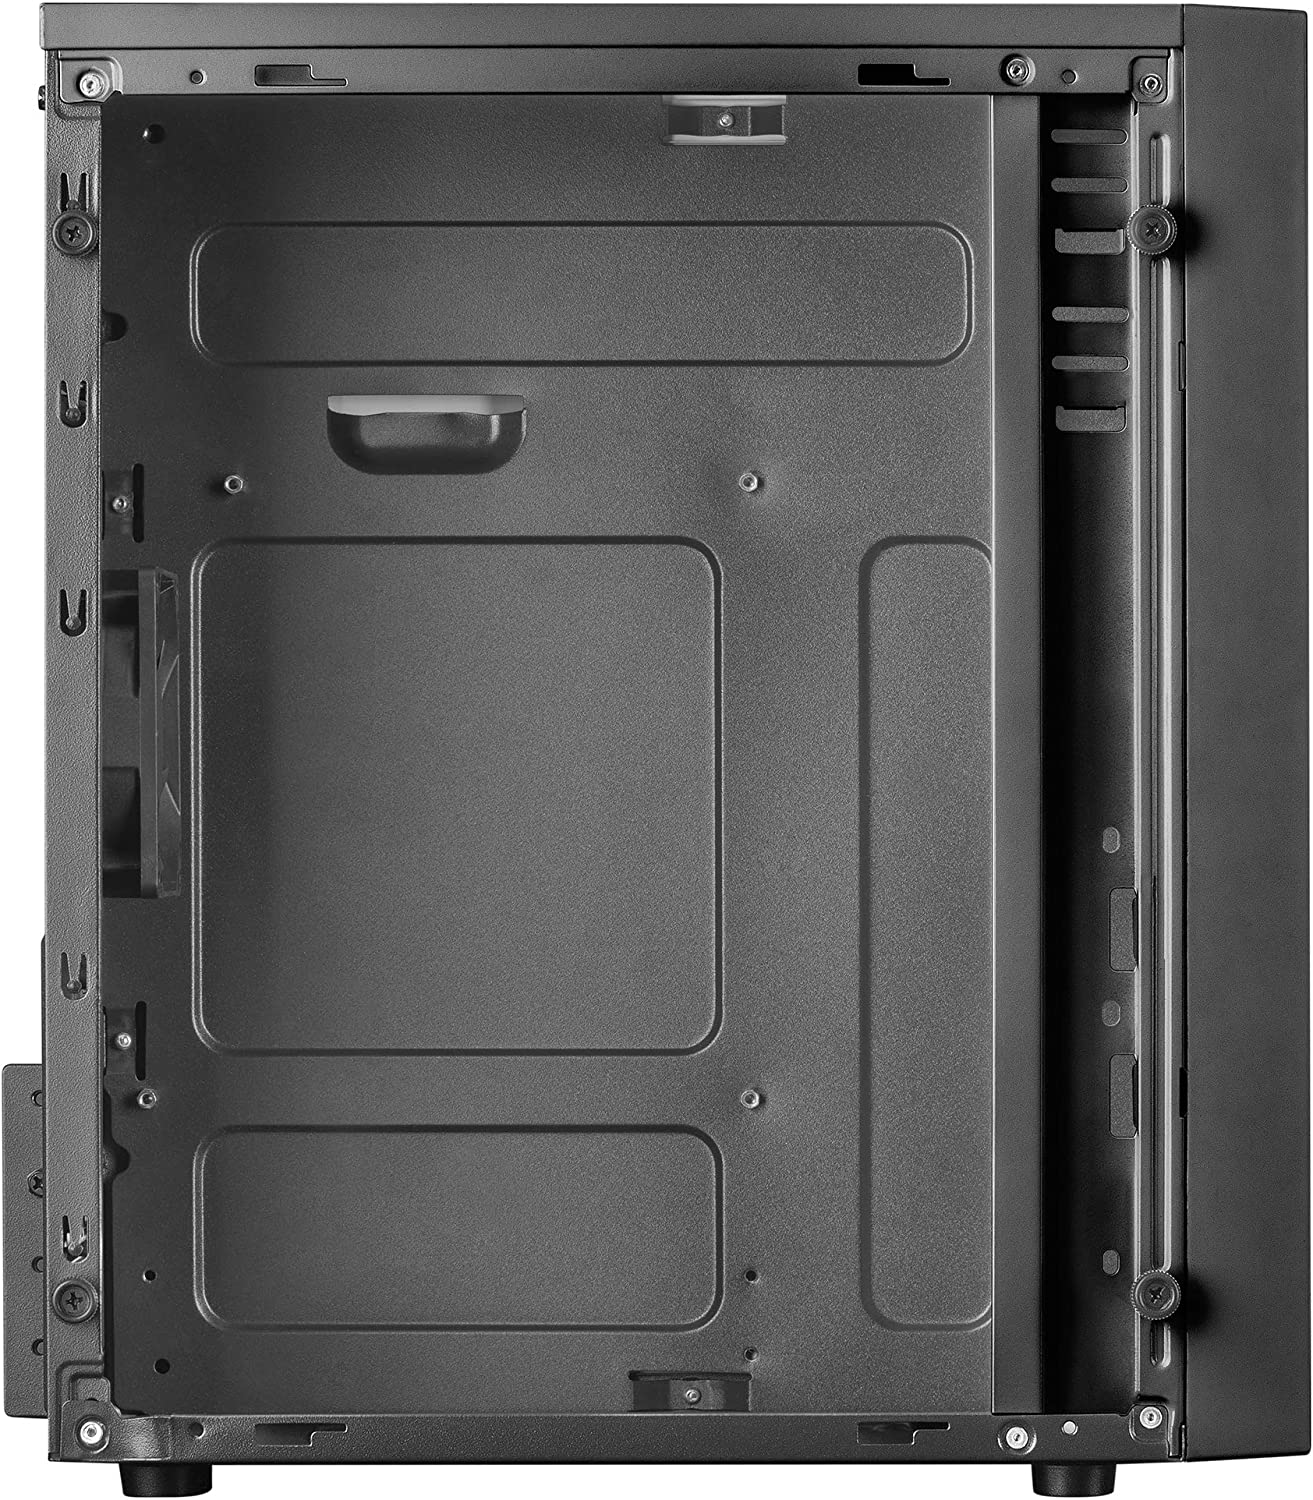 Mars Gaming MCM Micro ATX, Mini-ITX Mini Tower Case - Panneau latéral en acrylique - Éclairage RVB - Taille du disque dur 2,5", 3,5" - USB-A 3.0, USB-A 2.0 et audio - 1 ventilateur de 80 mm inclus